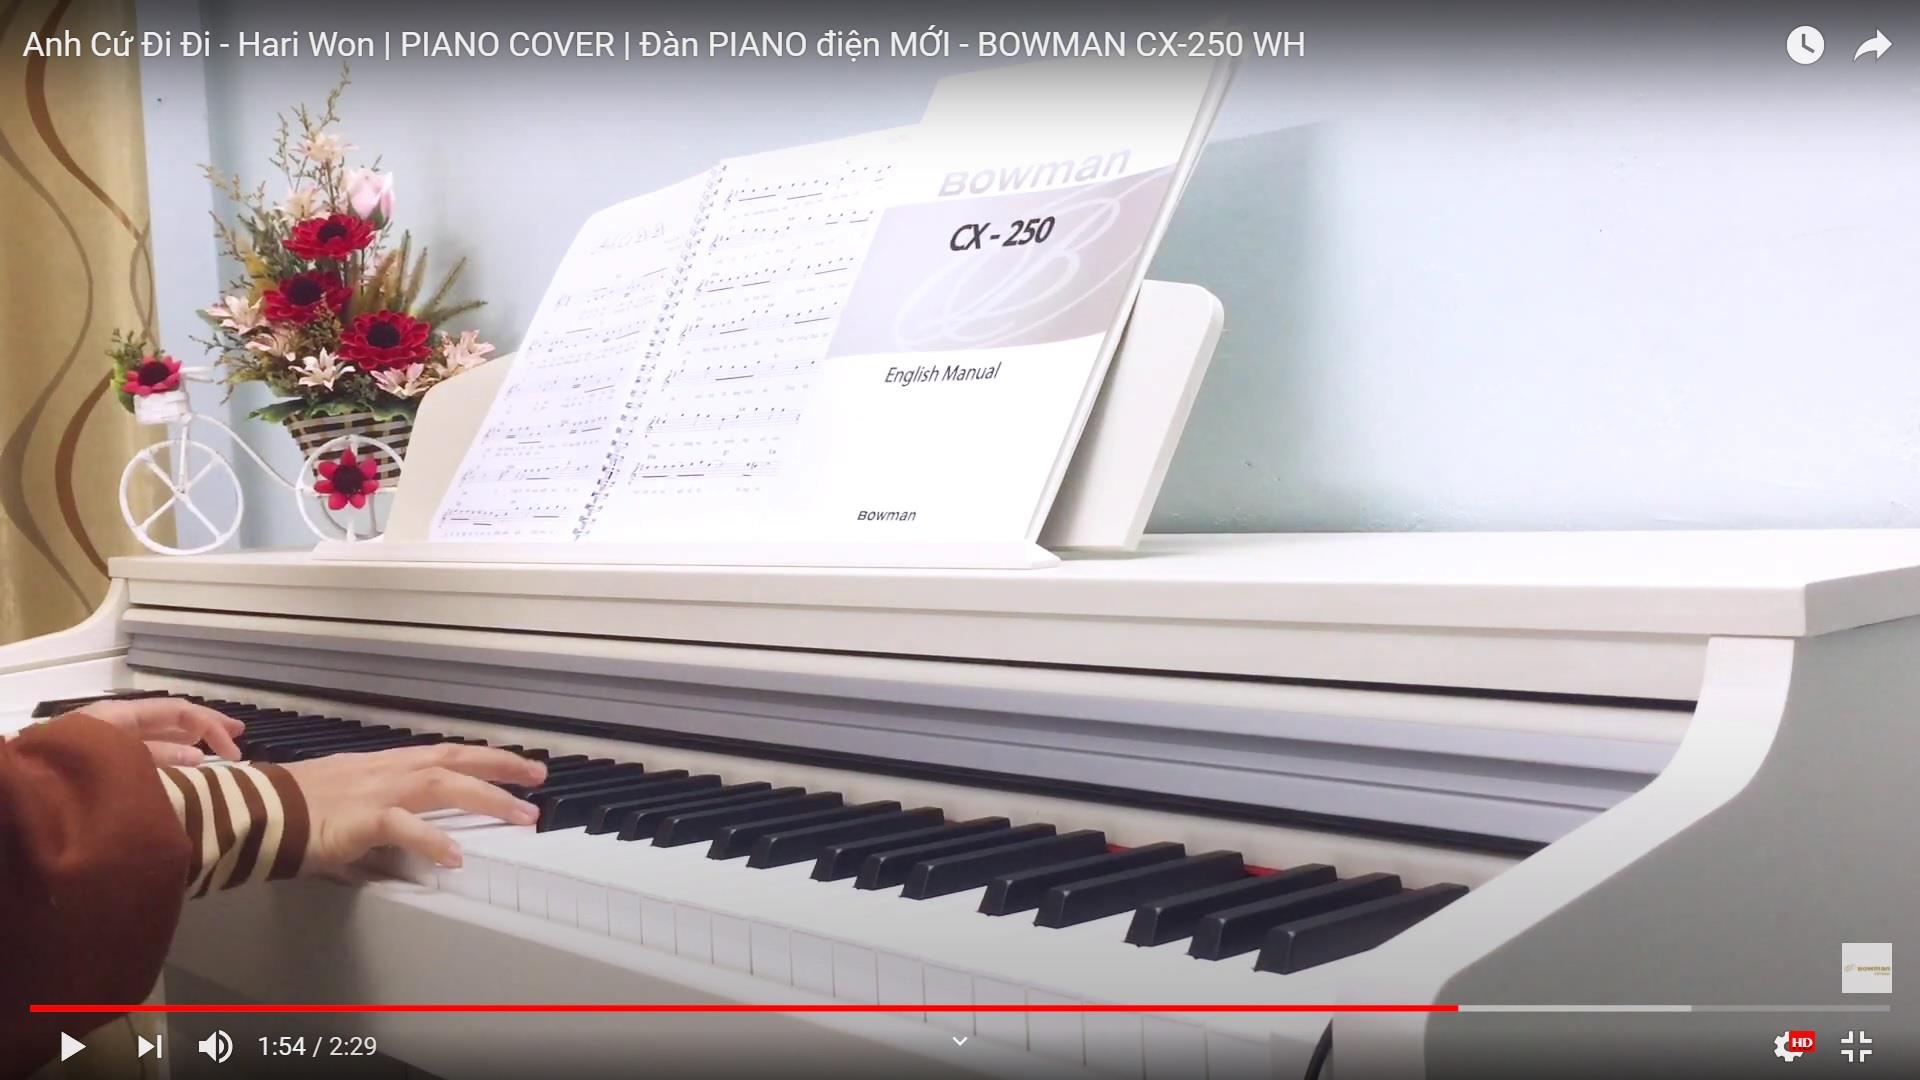 Anh Cứ Đi Đi - Hari Won | PIANO COVER | Đàn PIANO điện MỚI - BOWMAN CX-250 WH